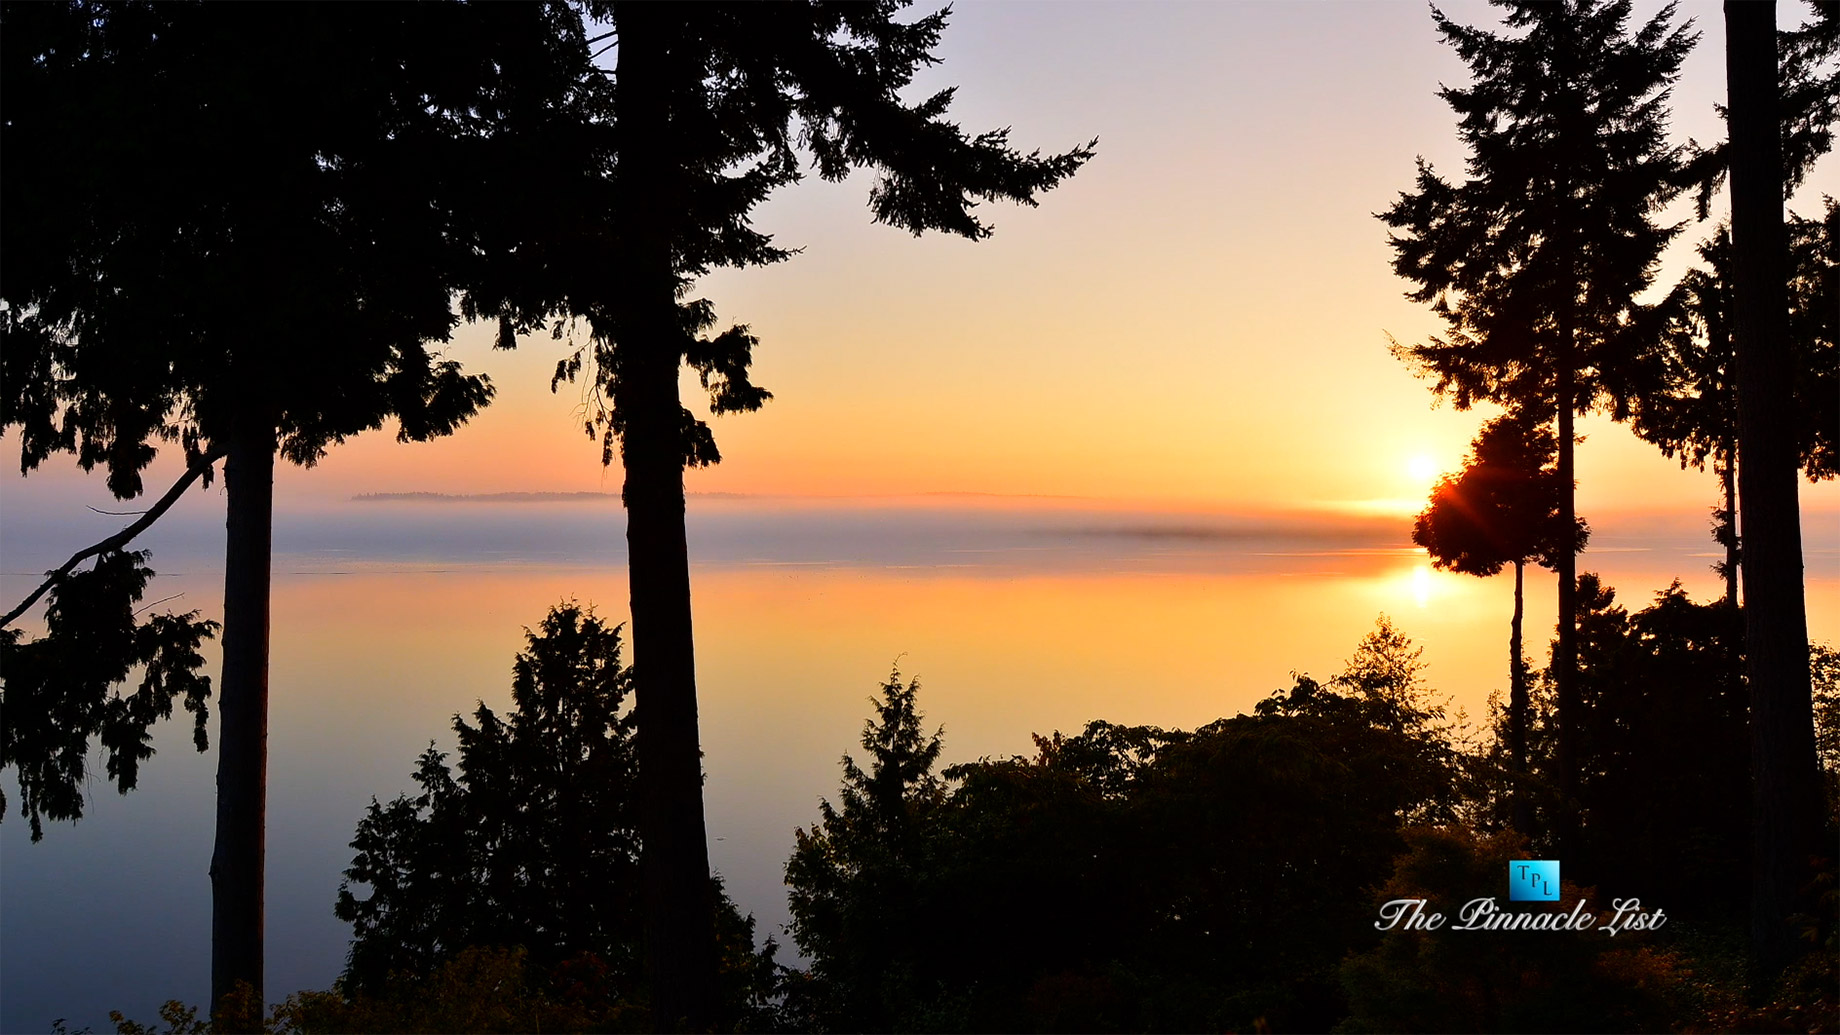 Drayton Harbor Sunrise Timelapse in Blaine, Washington, USA - Luxury Travel